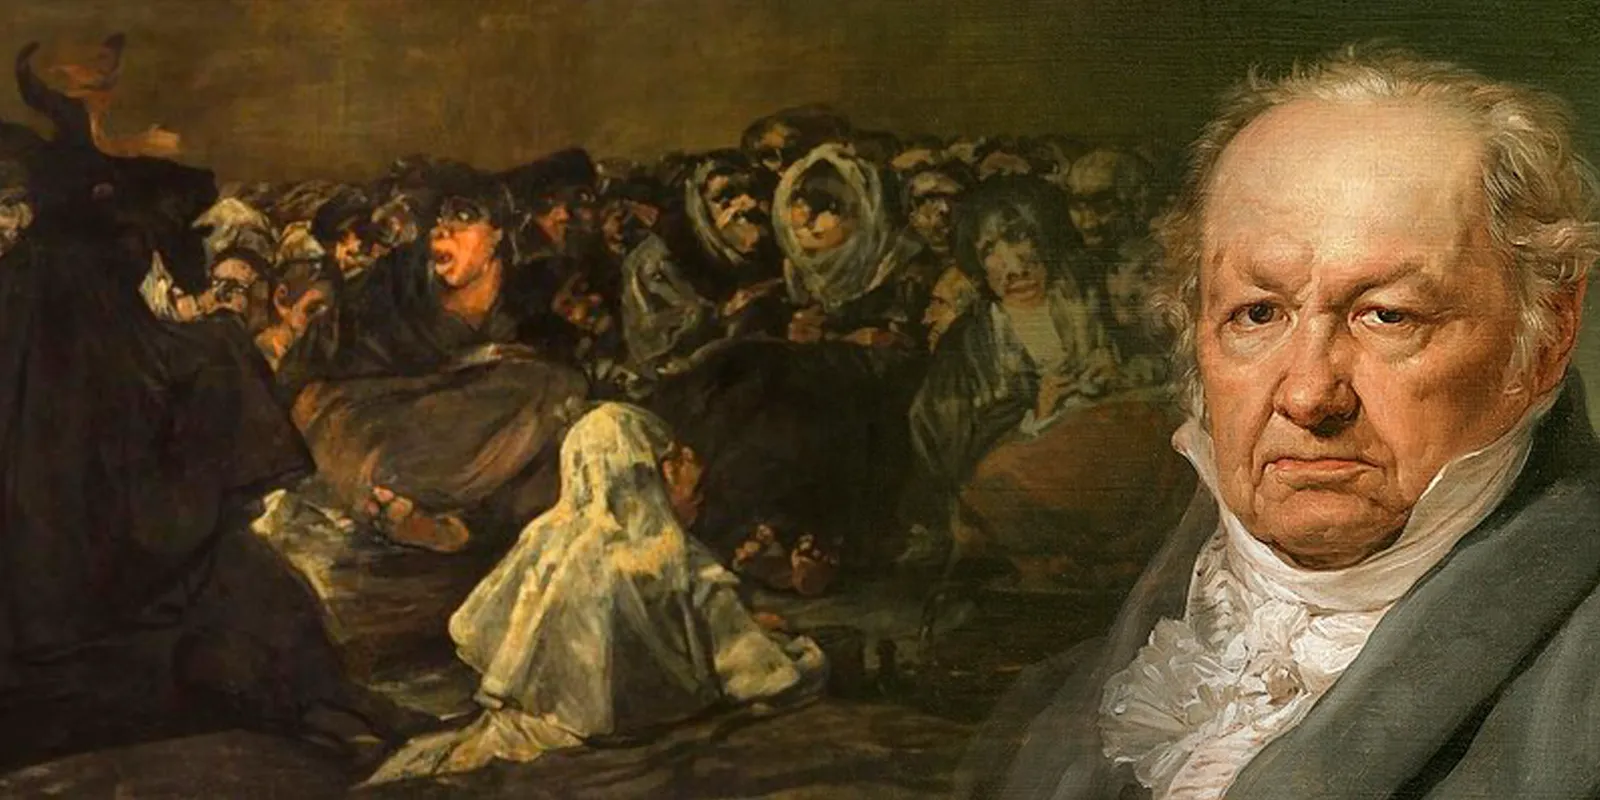 Goya reunión nocturna de brujas